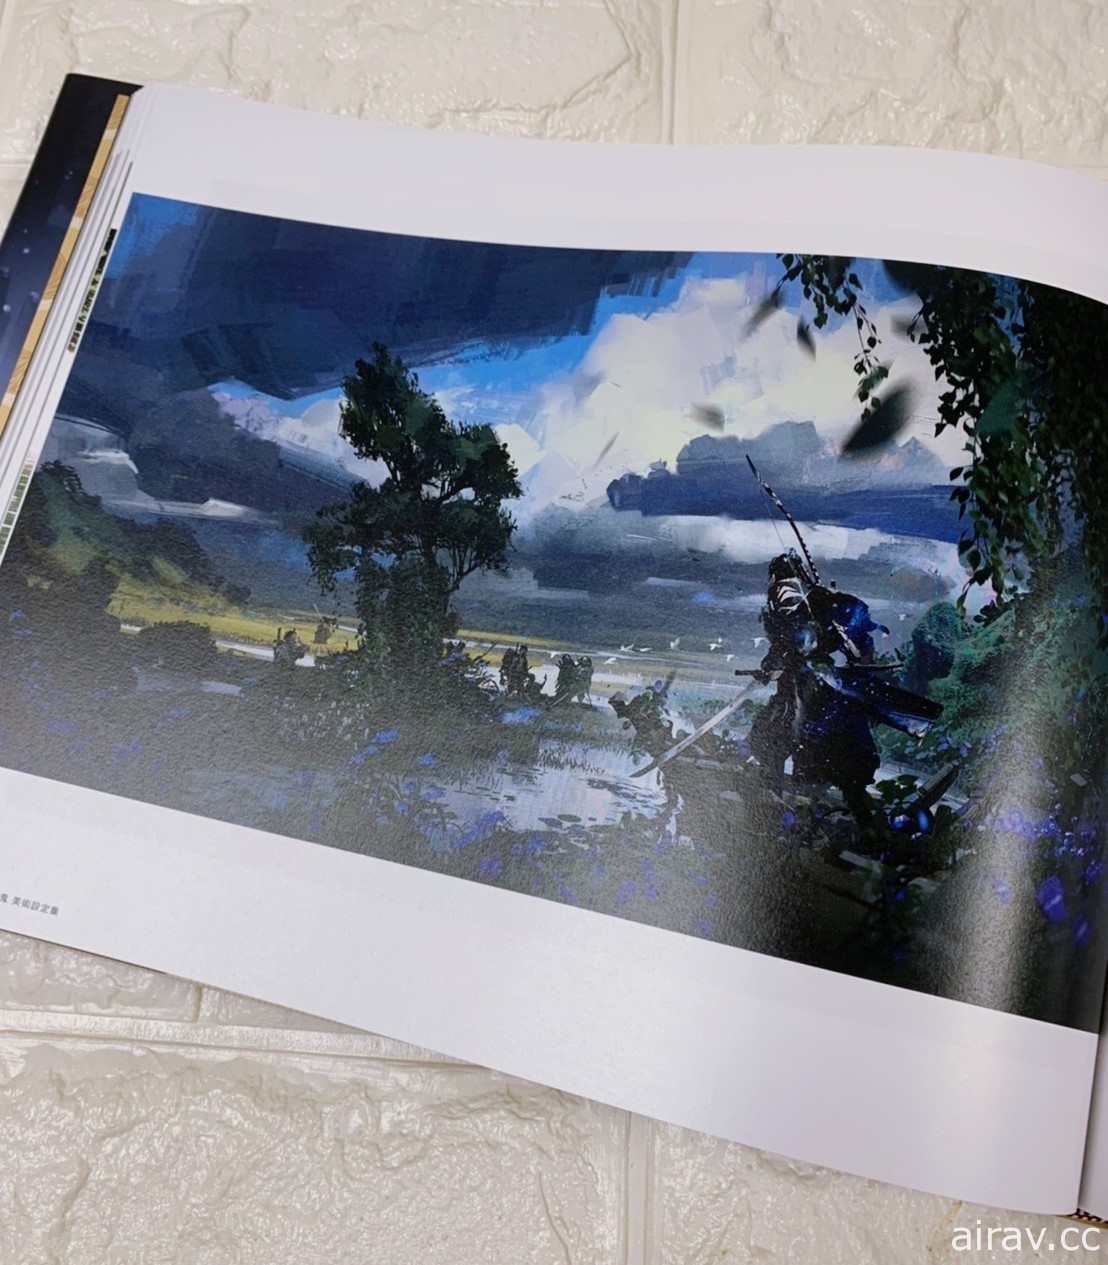 《對馬戰鬼》美術設定集 8/31 推出 收錄百幅概念圖 一窺既美麗又崩壞的對馬島